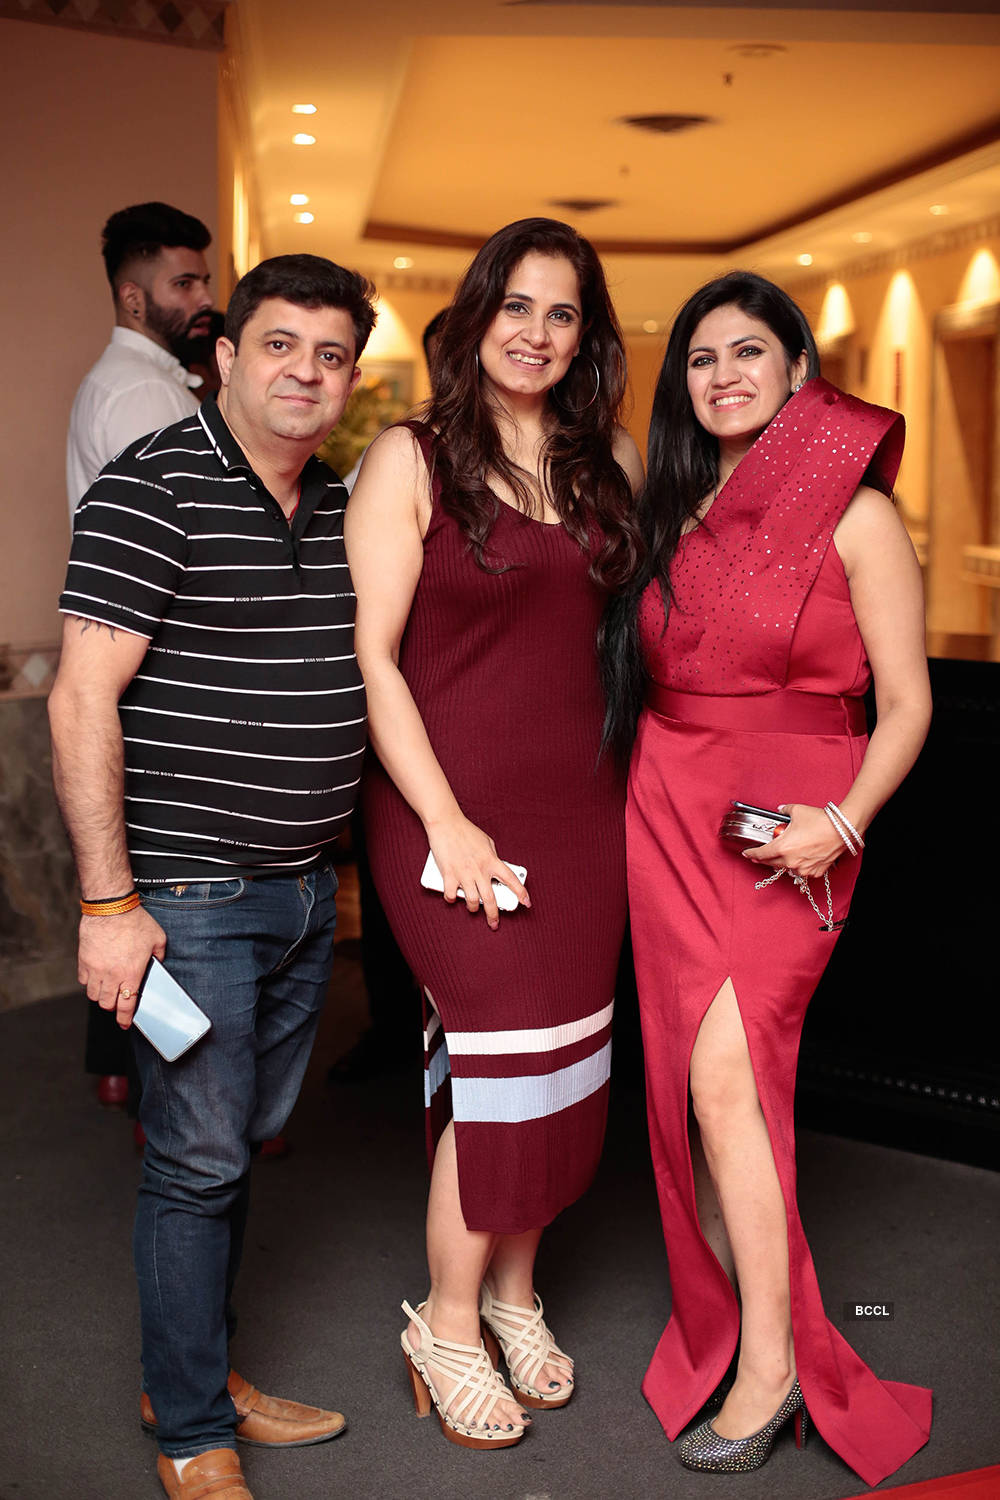 TV star Tarun Khanna launched SKA Creative Concepts with fashion influencer Sunaina K Arora